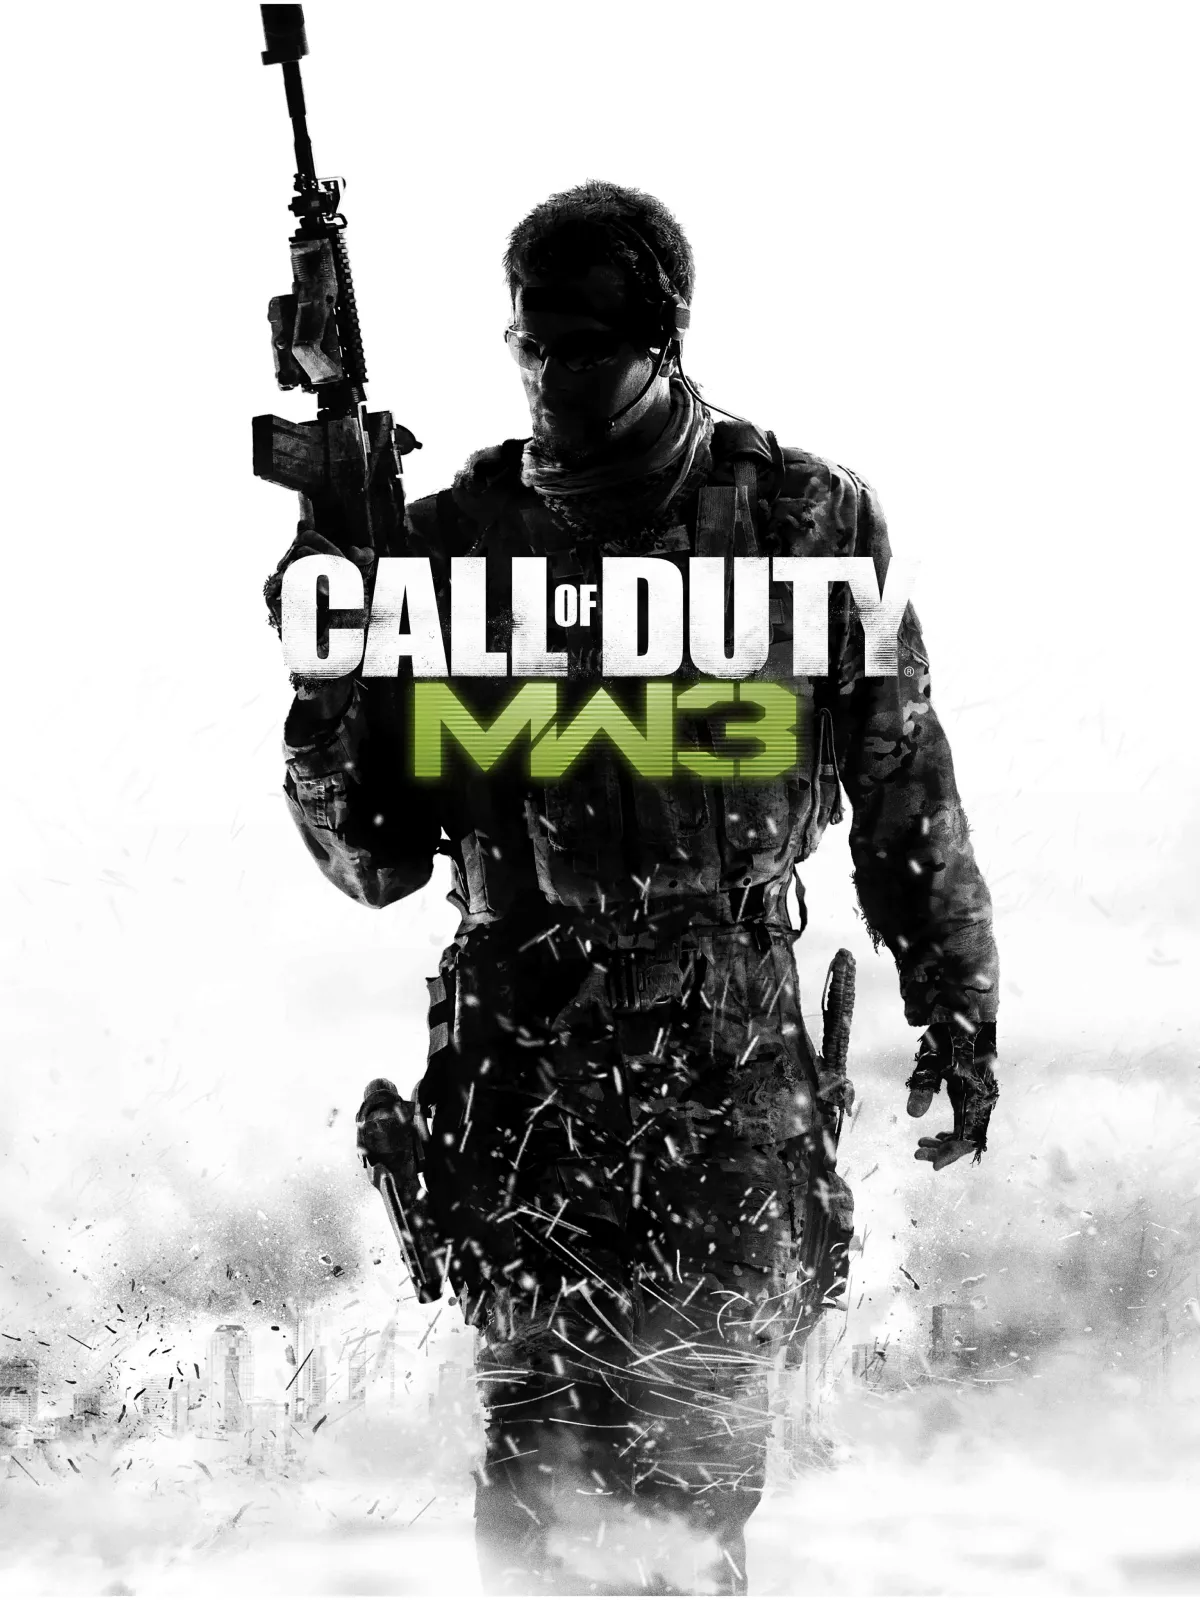 Call of Duty мв3. Call of Duty: Modern Warfare 3: Defiance. Call of Duty: Modern Warfare 3 обложка. Фото Call of Duty mw3. Купить кал оф дьюти модерн варфаер 3